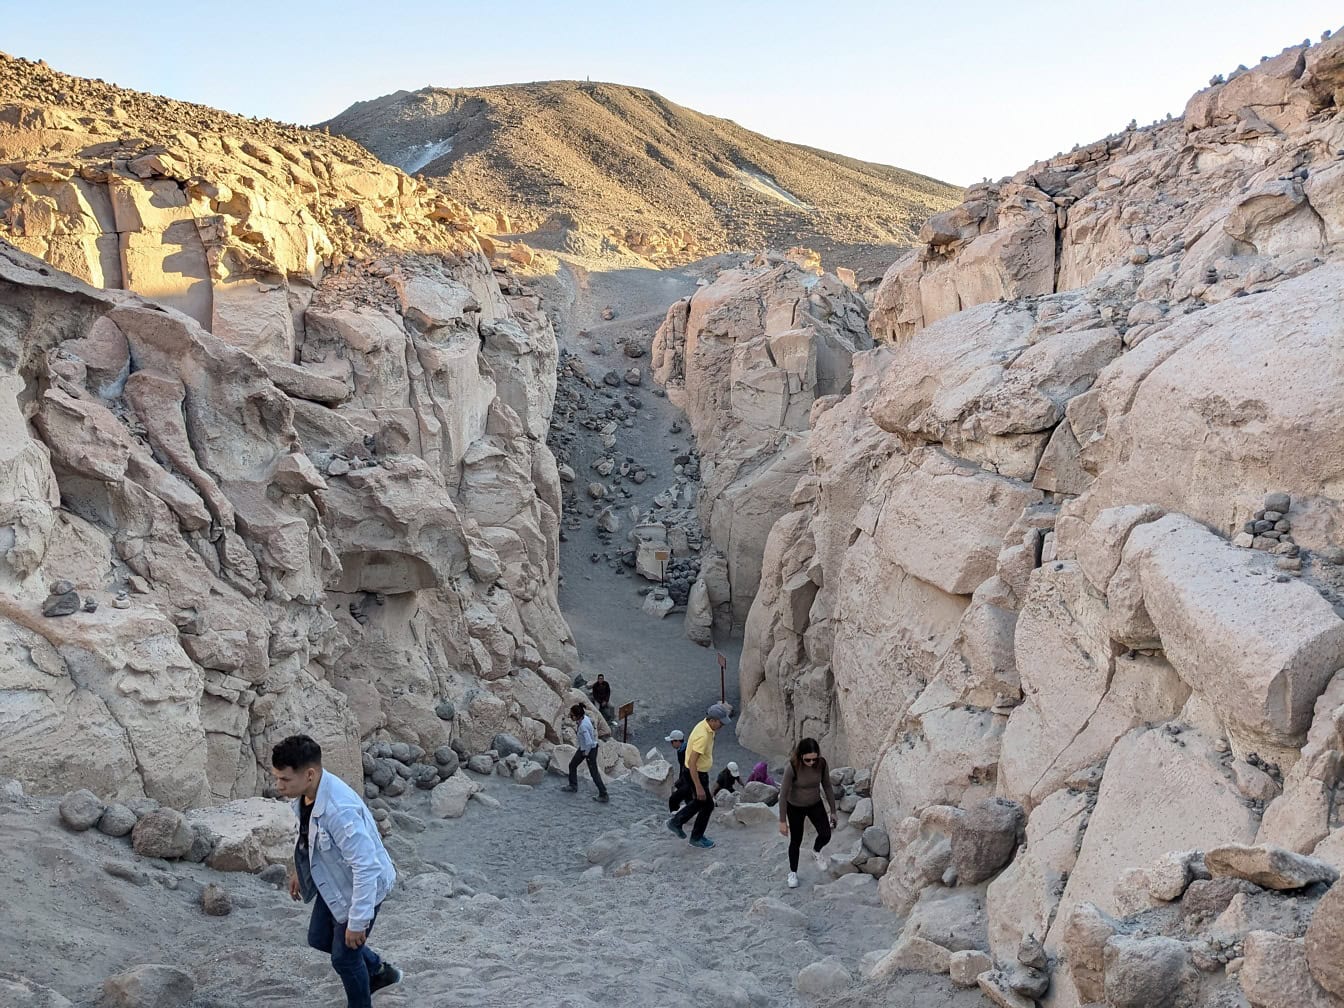 Peru’daki Arequipa’da bir kanyonda yürüyen bir grup insan